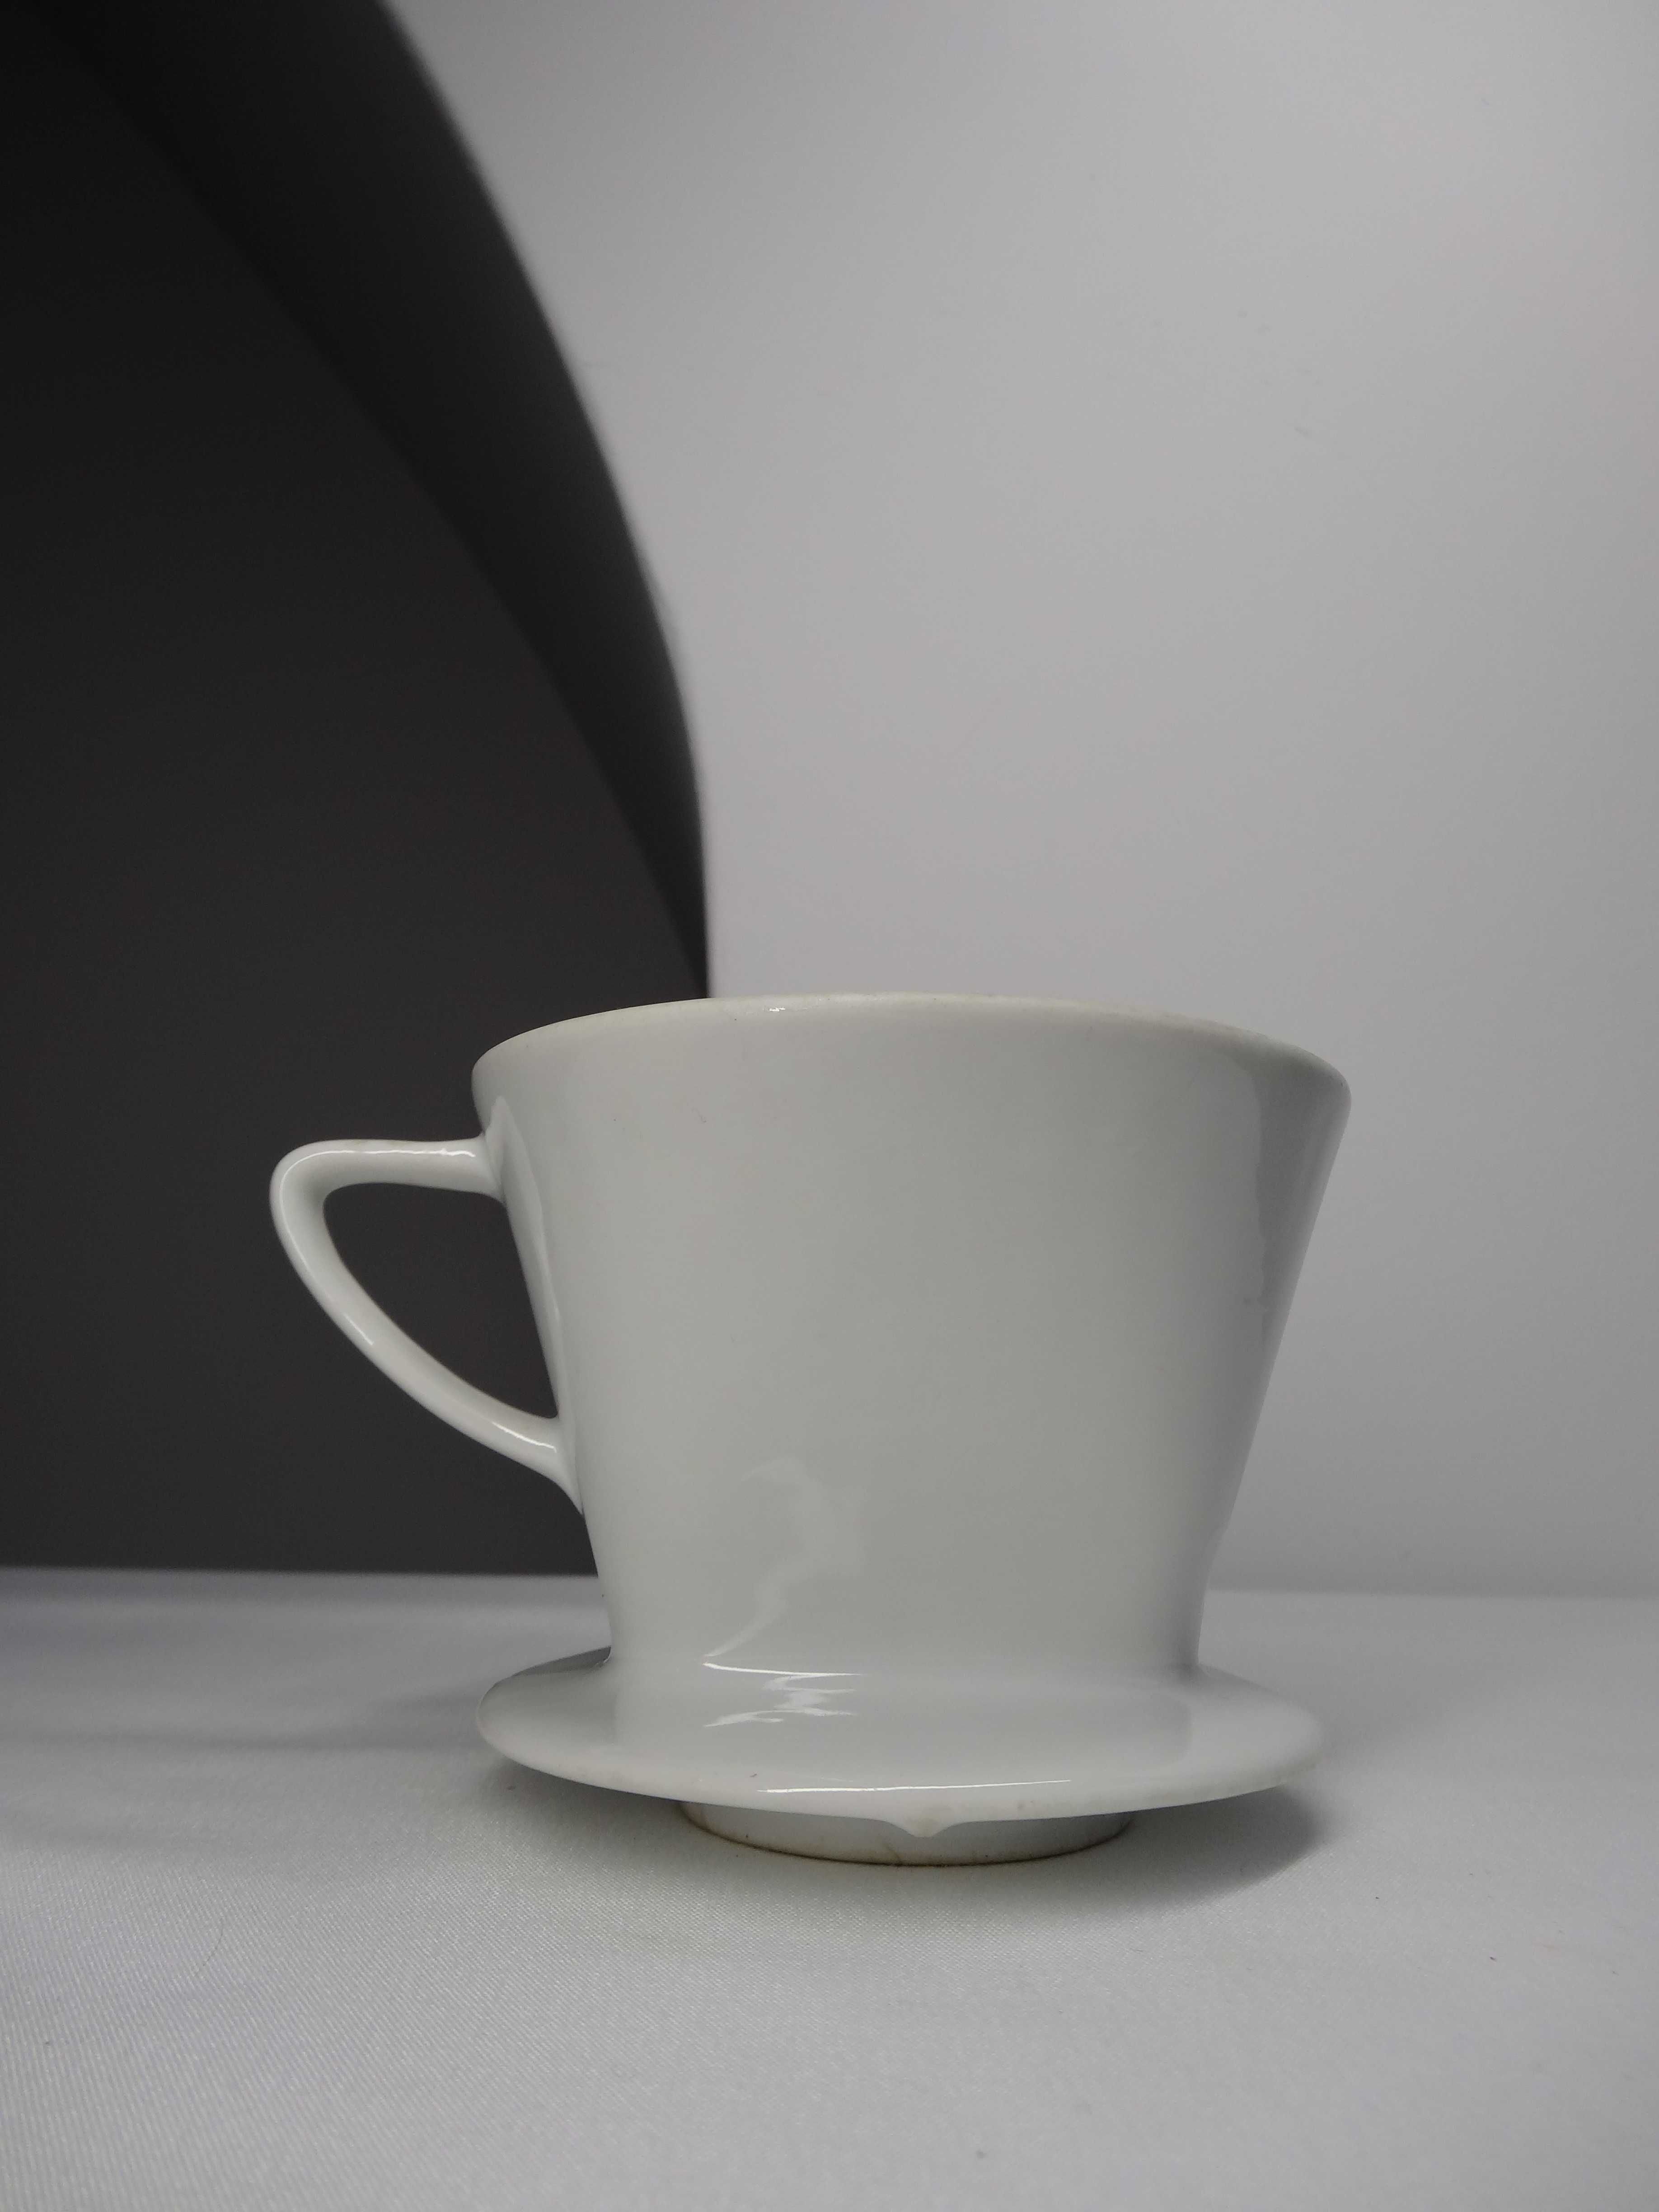 Porcelanowy dripper do kawy Melitta 101, filtr do kawy